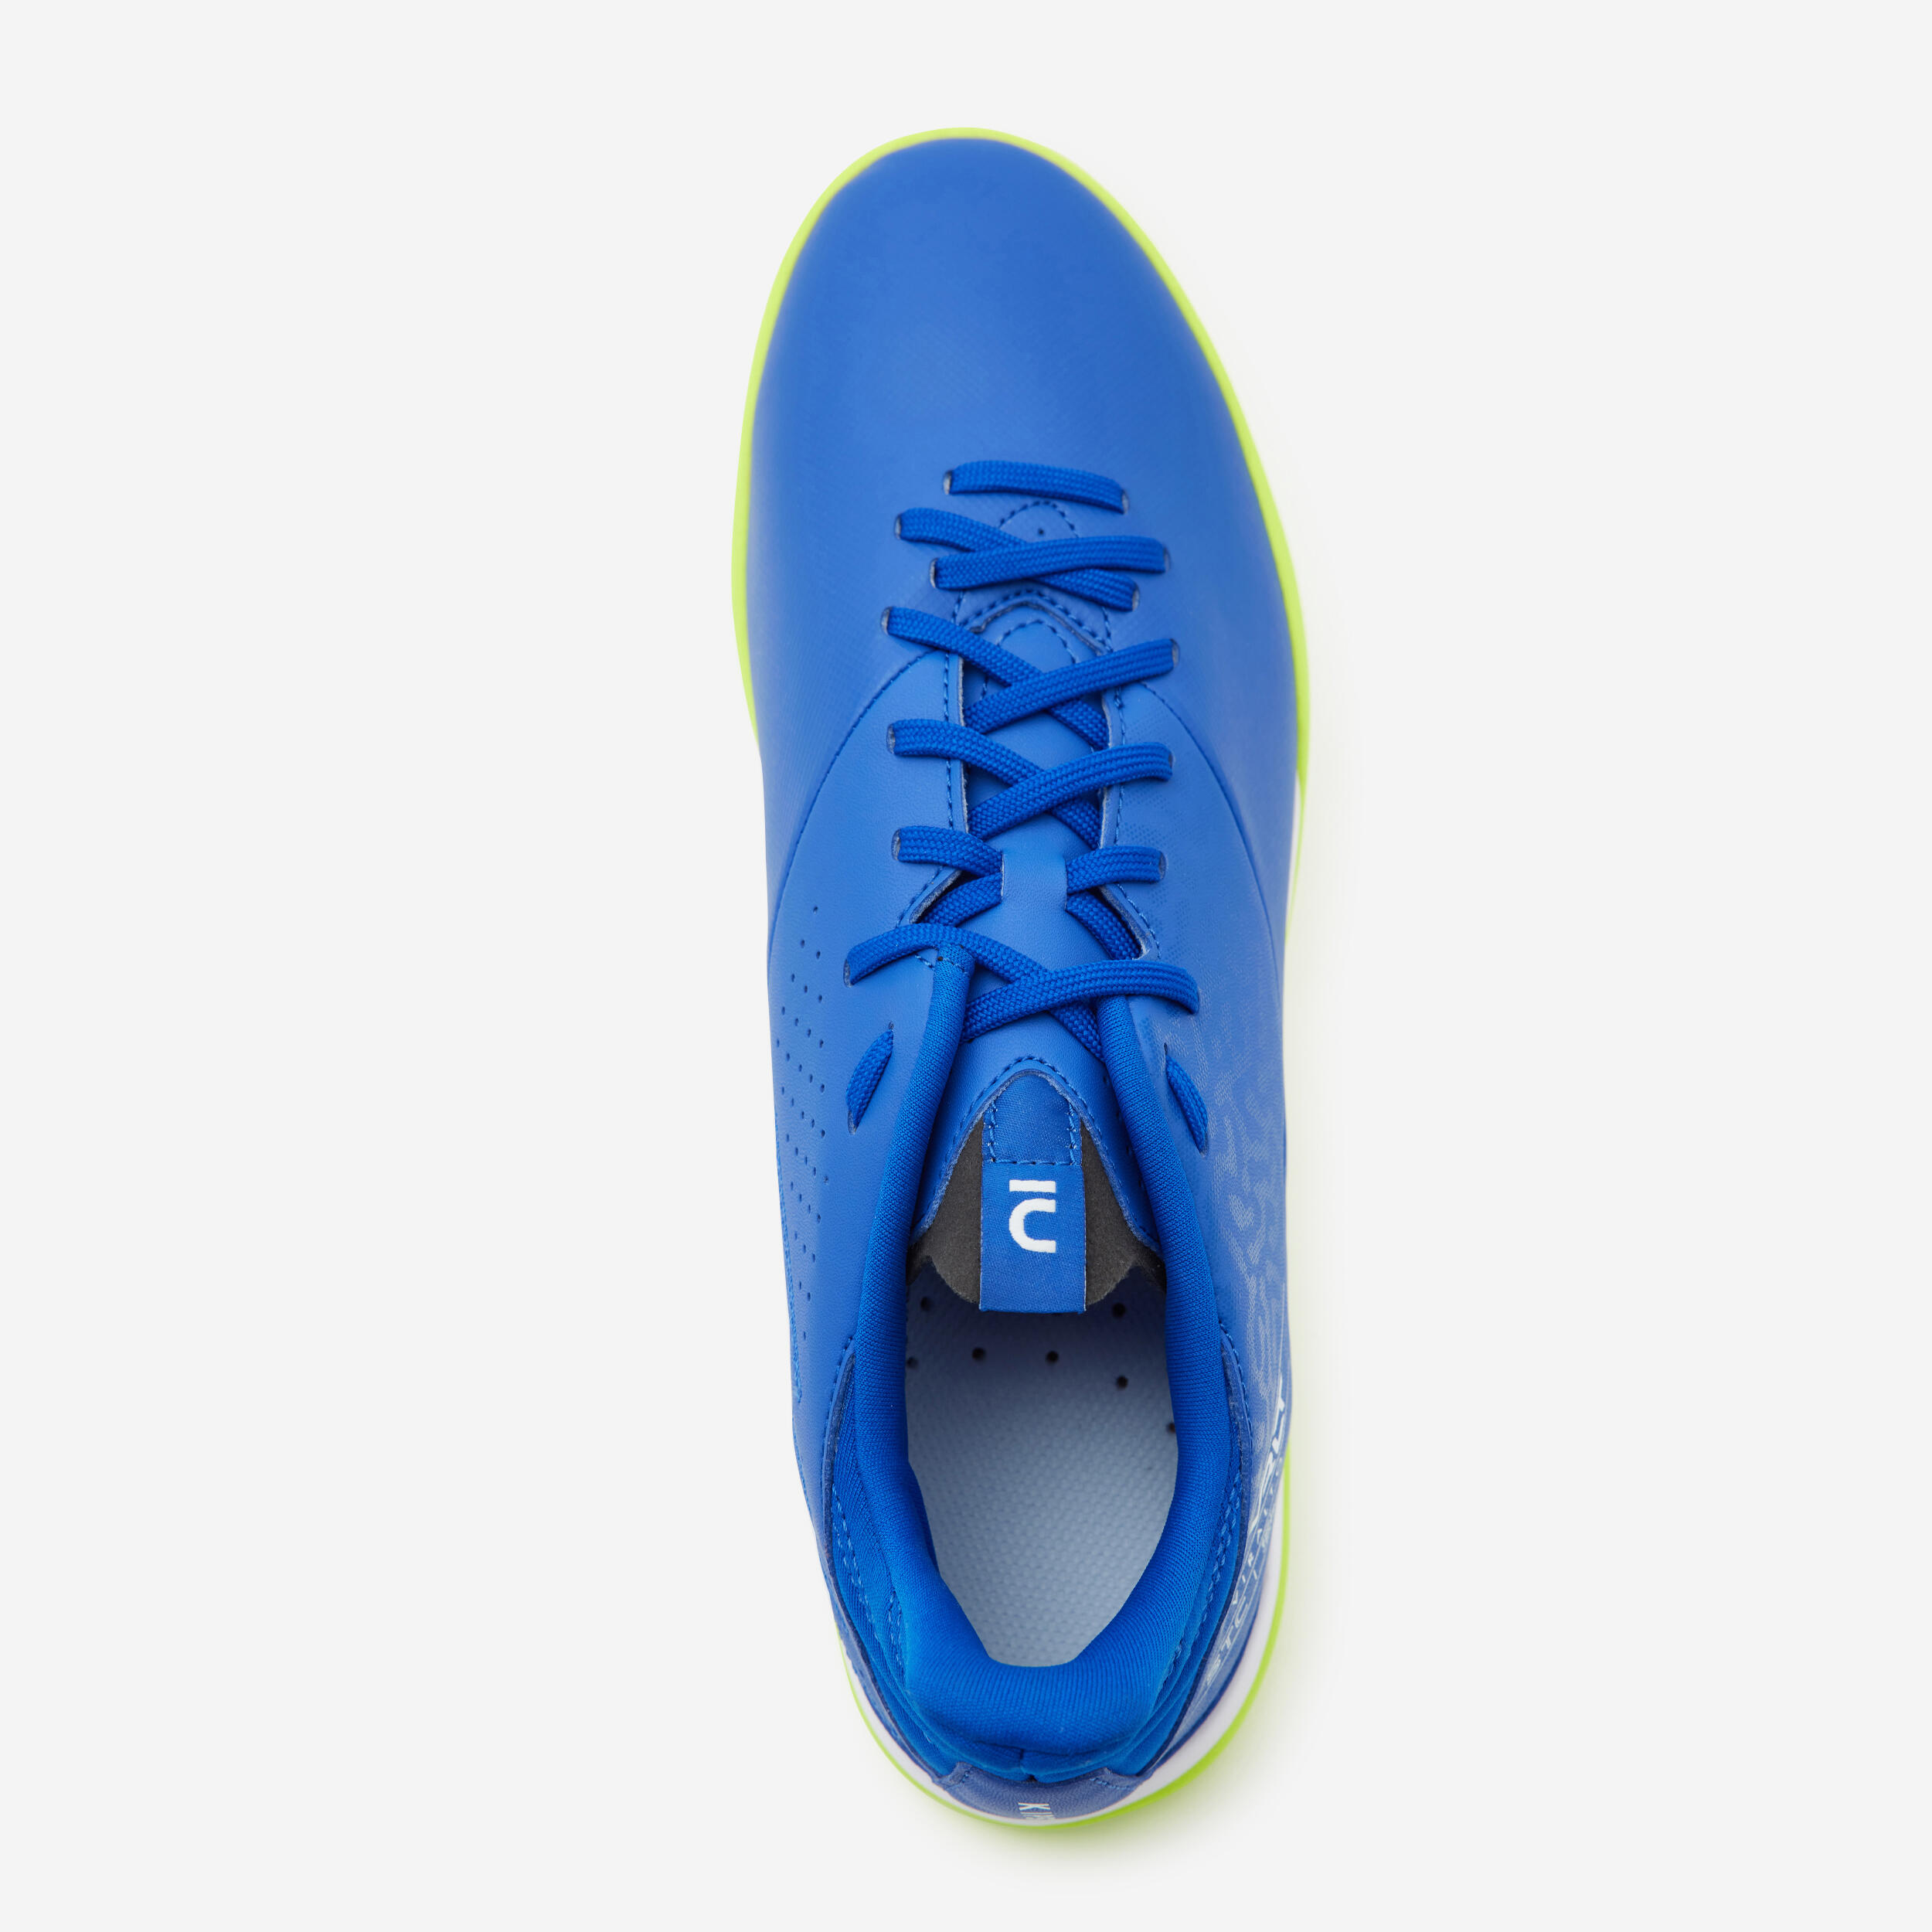 Turf Football Boots Viralto I TF - Blue/Yellow 7/8